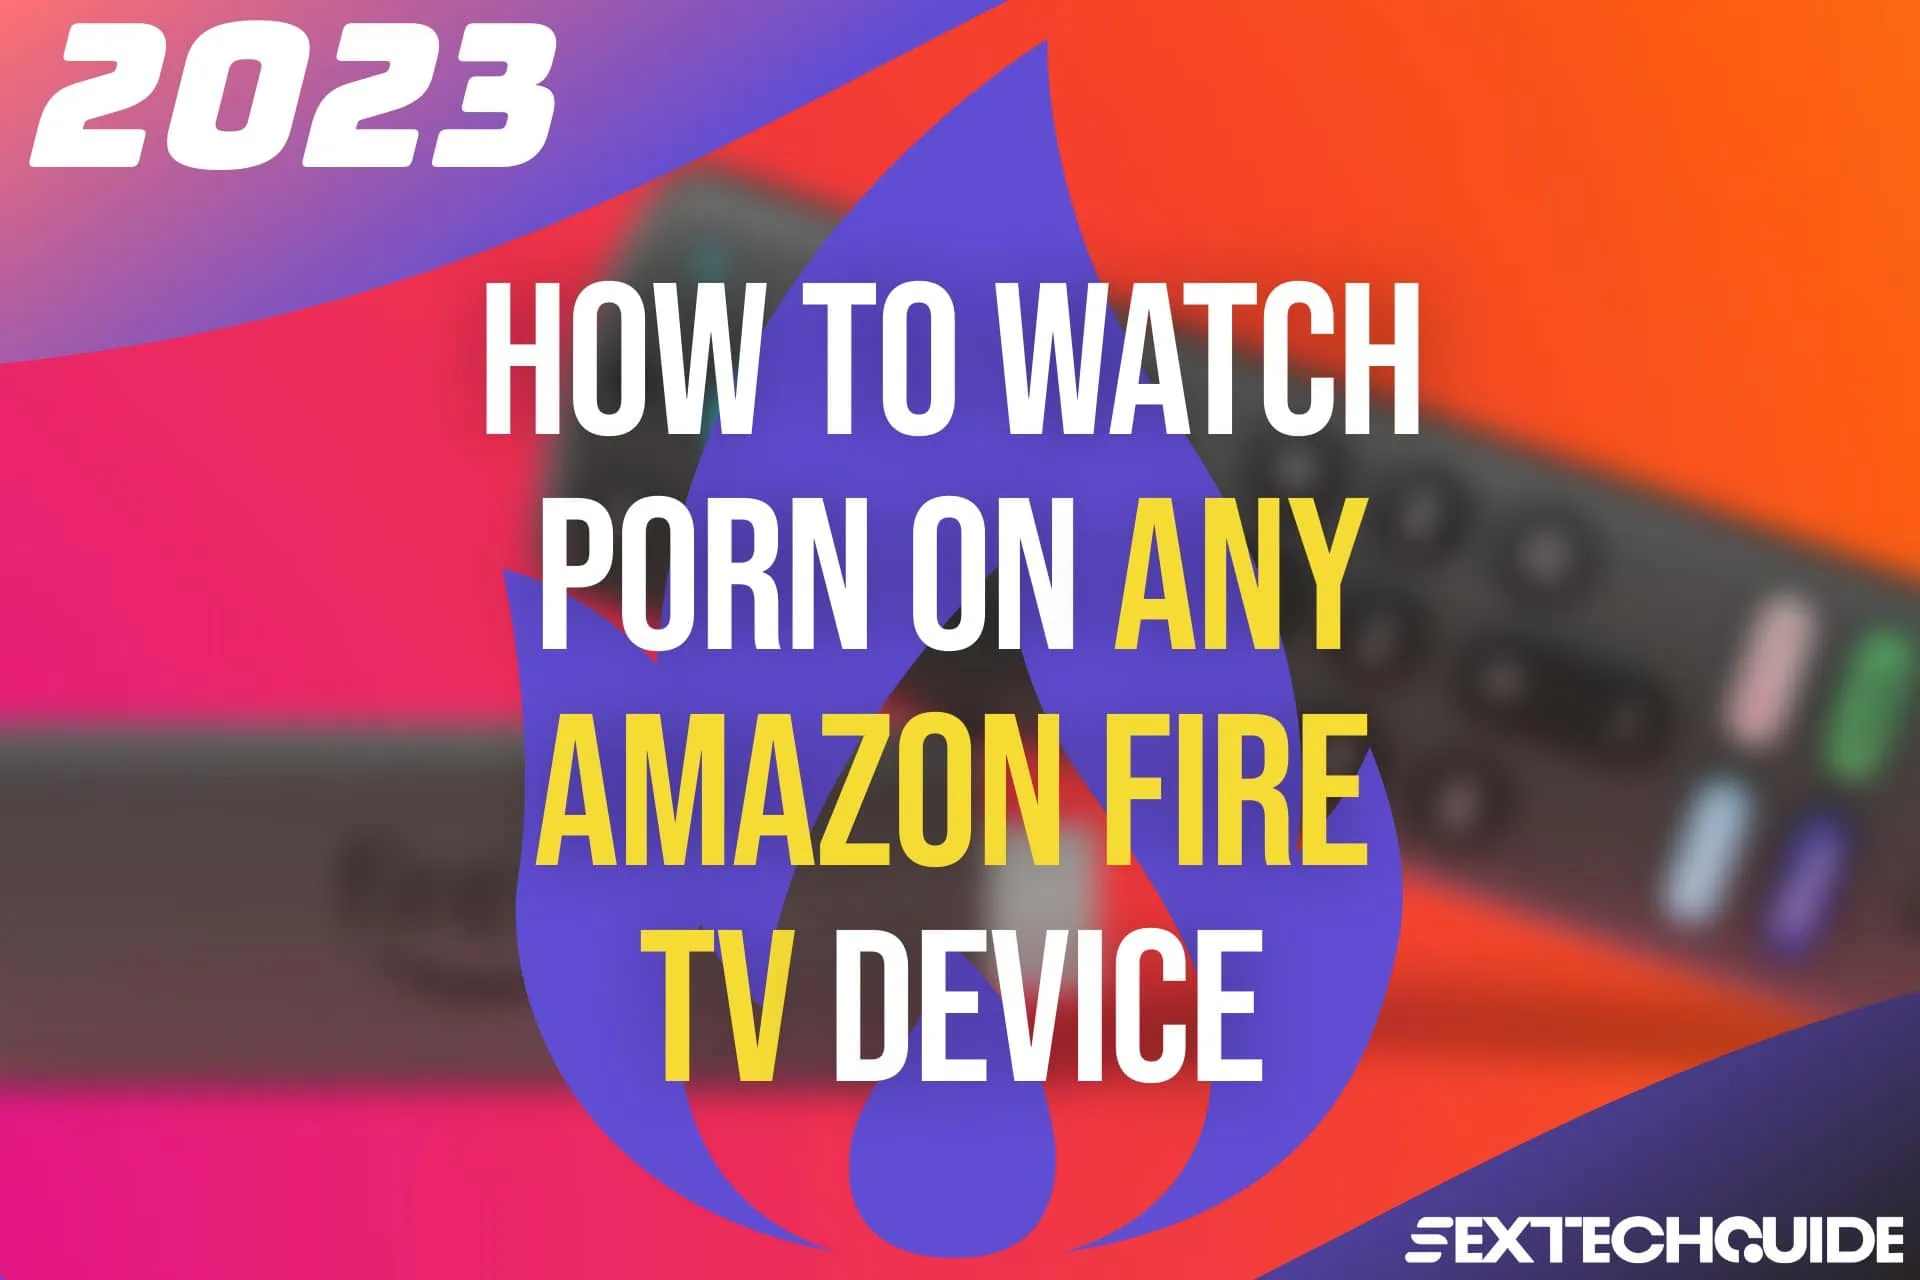 Smart Watchxxx - Fire Porn (2023): Find & Watch XXX Videos on Amazon Devices